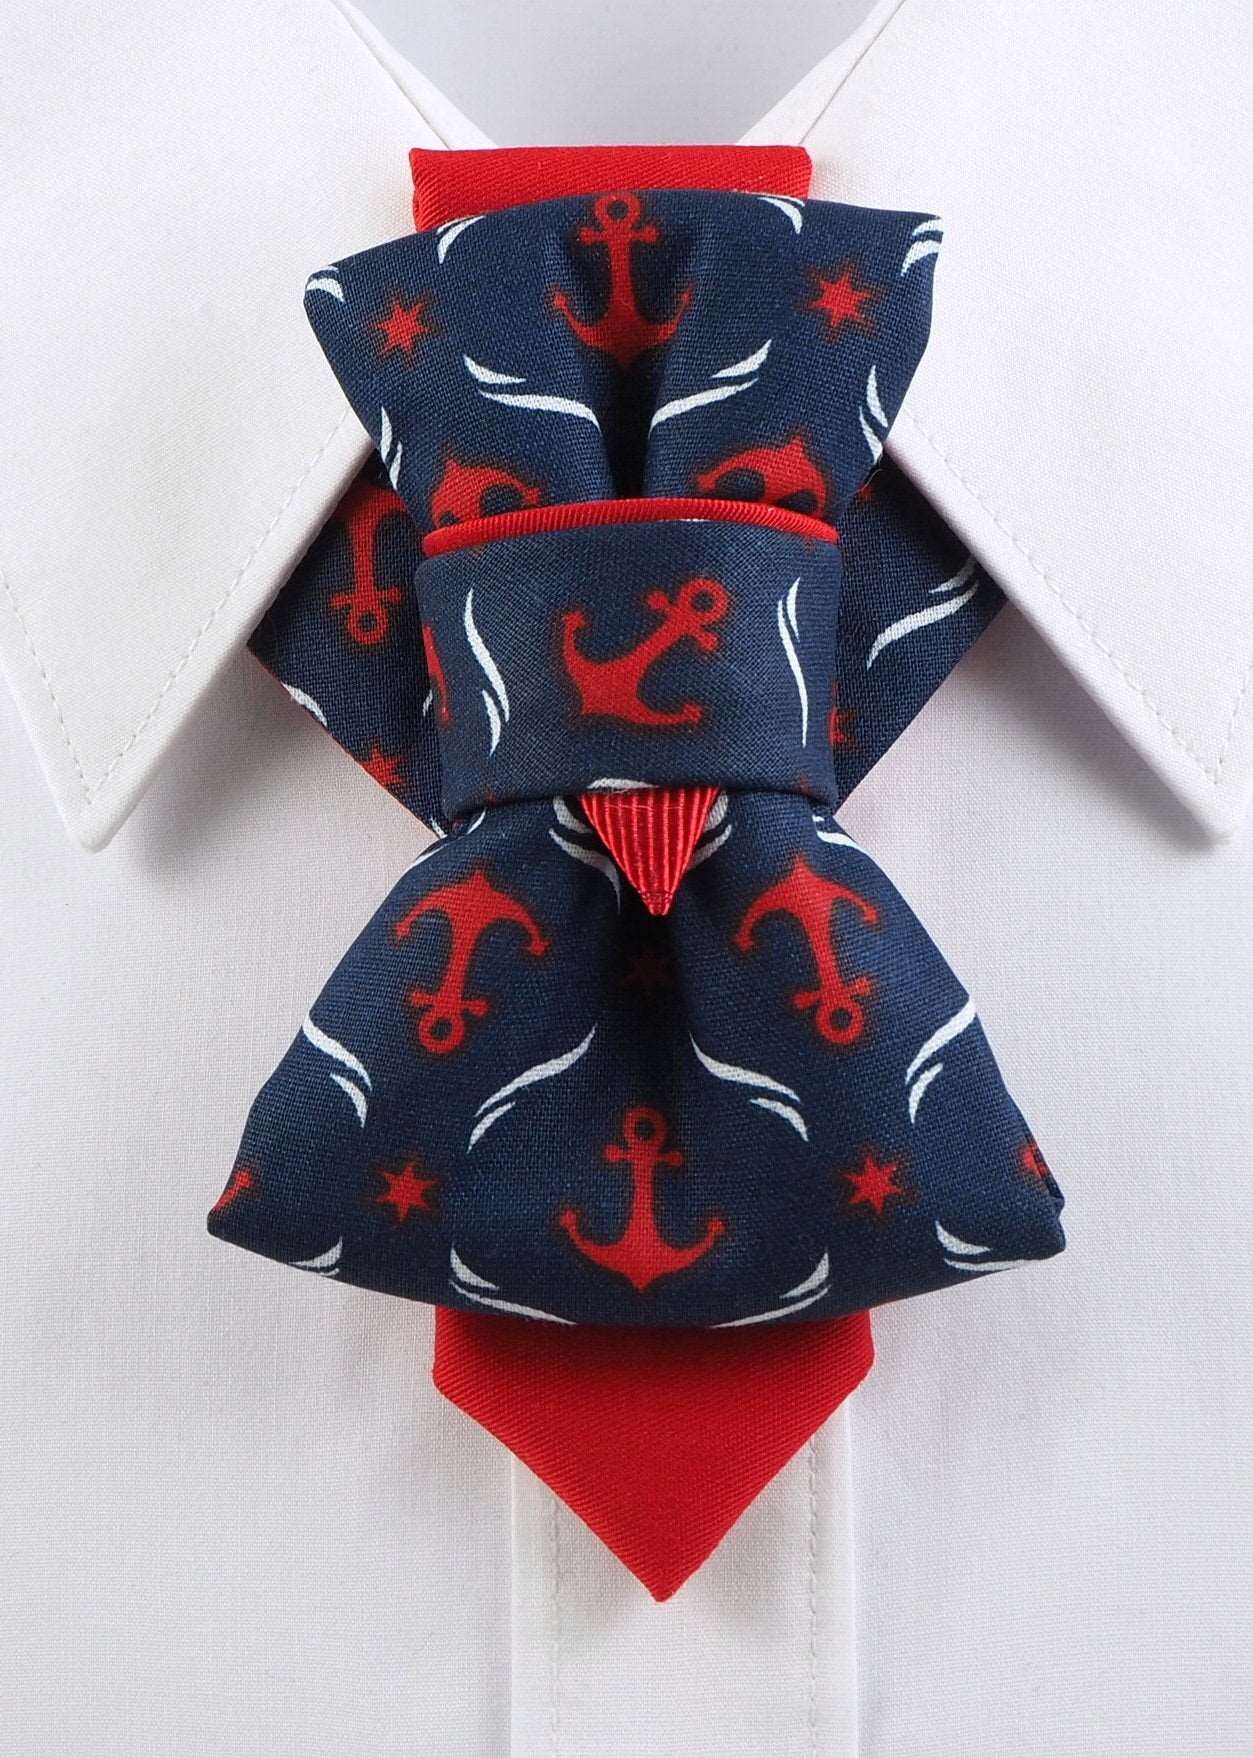 Unique Handmade Bow Ties, HOPPER TIE ANCHOR, Best bow tie, ANCHOR BOW TIE (HOPPER TIE), wedding bow tie, kaklaraištis Žiogas